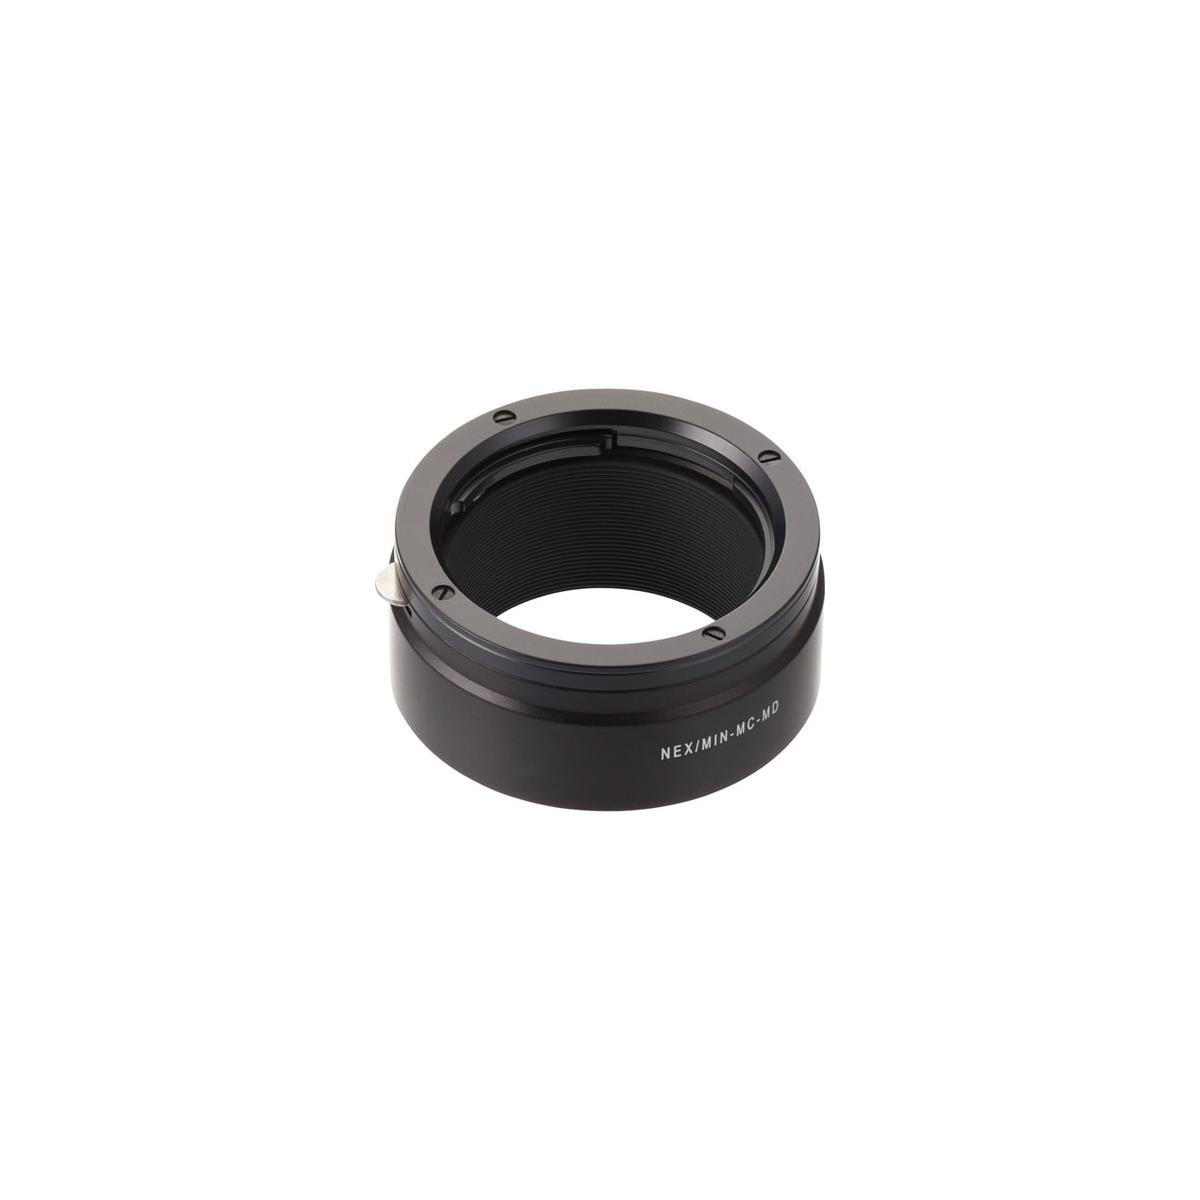 Image of Novoflex Adaptr Minolta MD/MC Lens to Sony NEX Camera